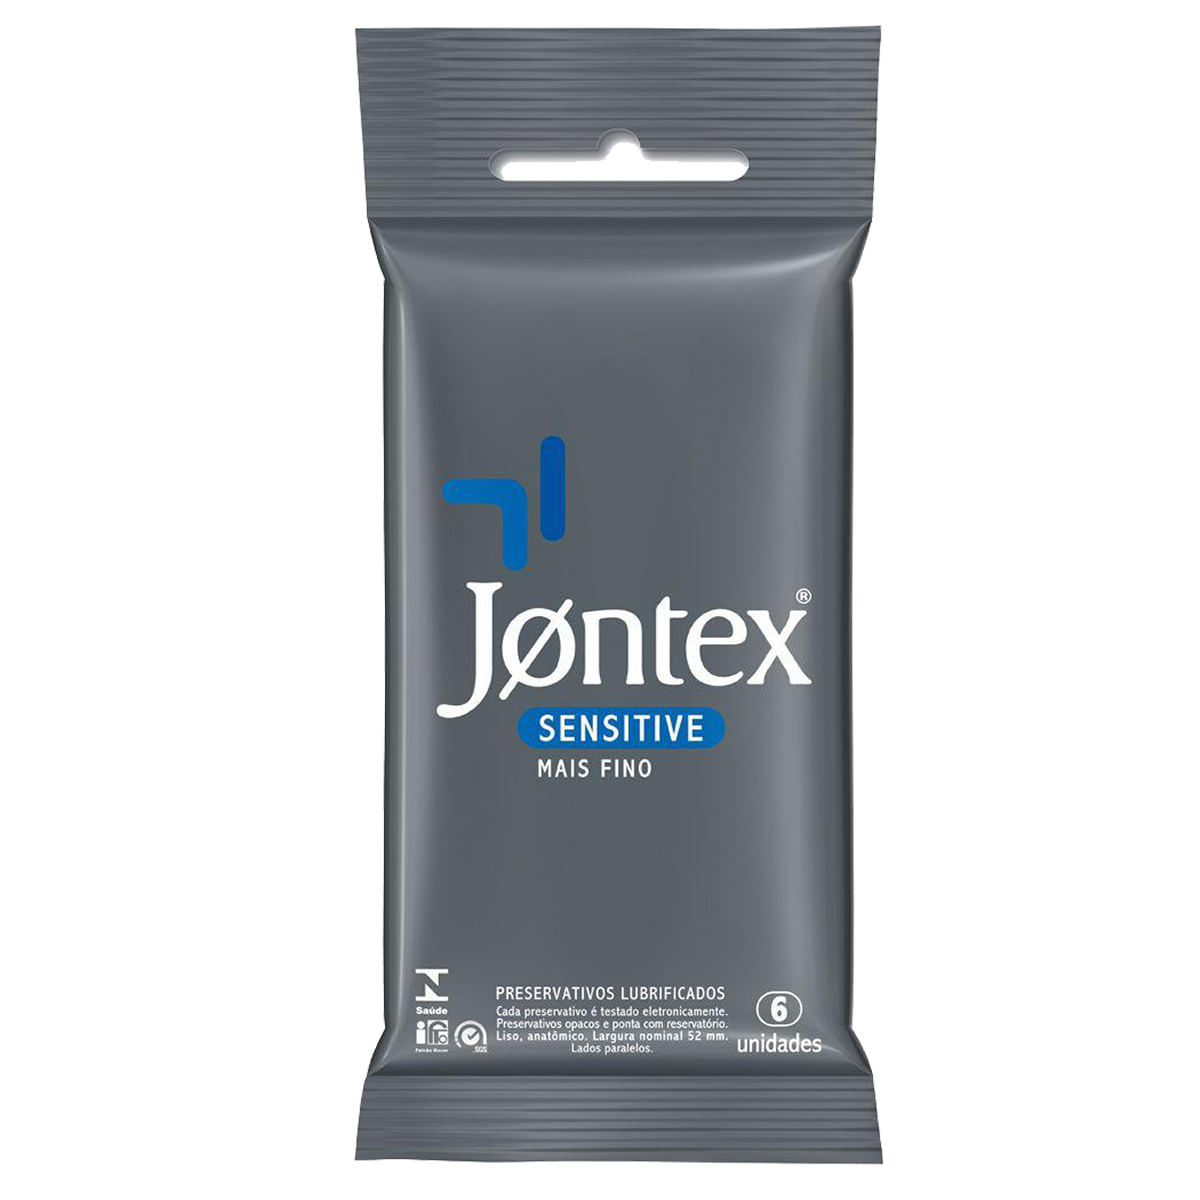 Preservativos Lubrificados Sensitive Mais Fino com 6 unidades Jontex